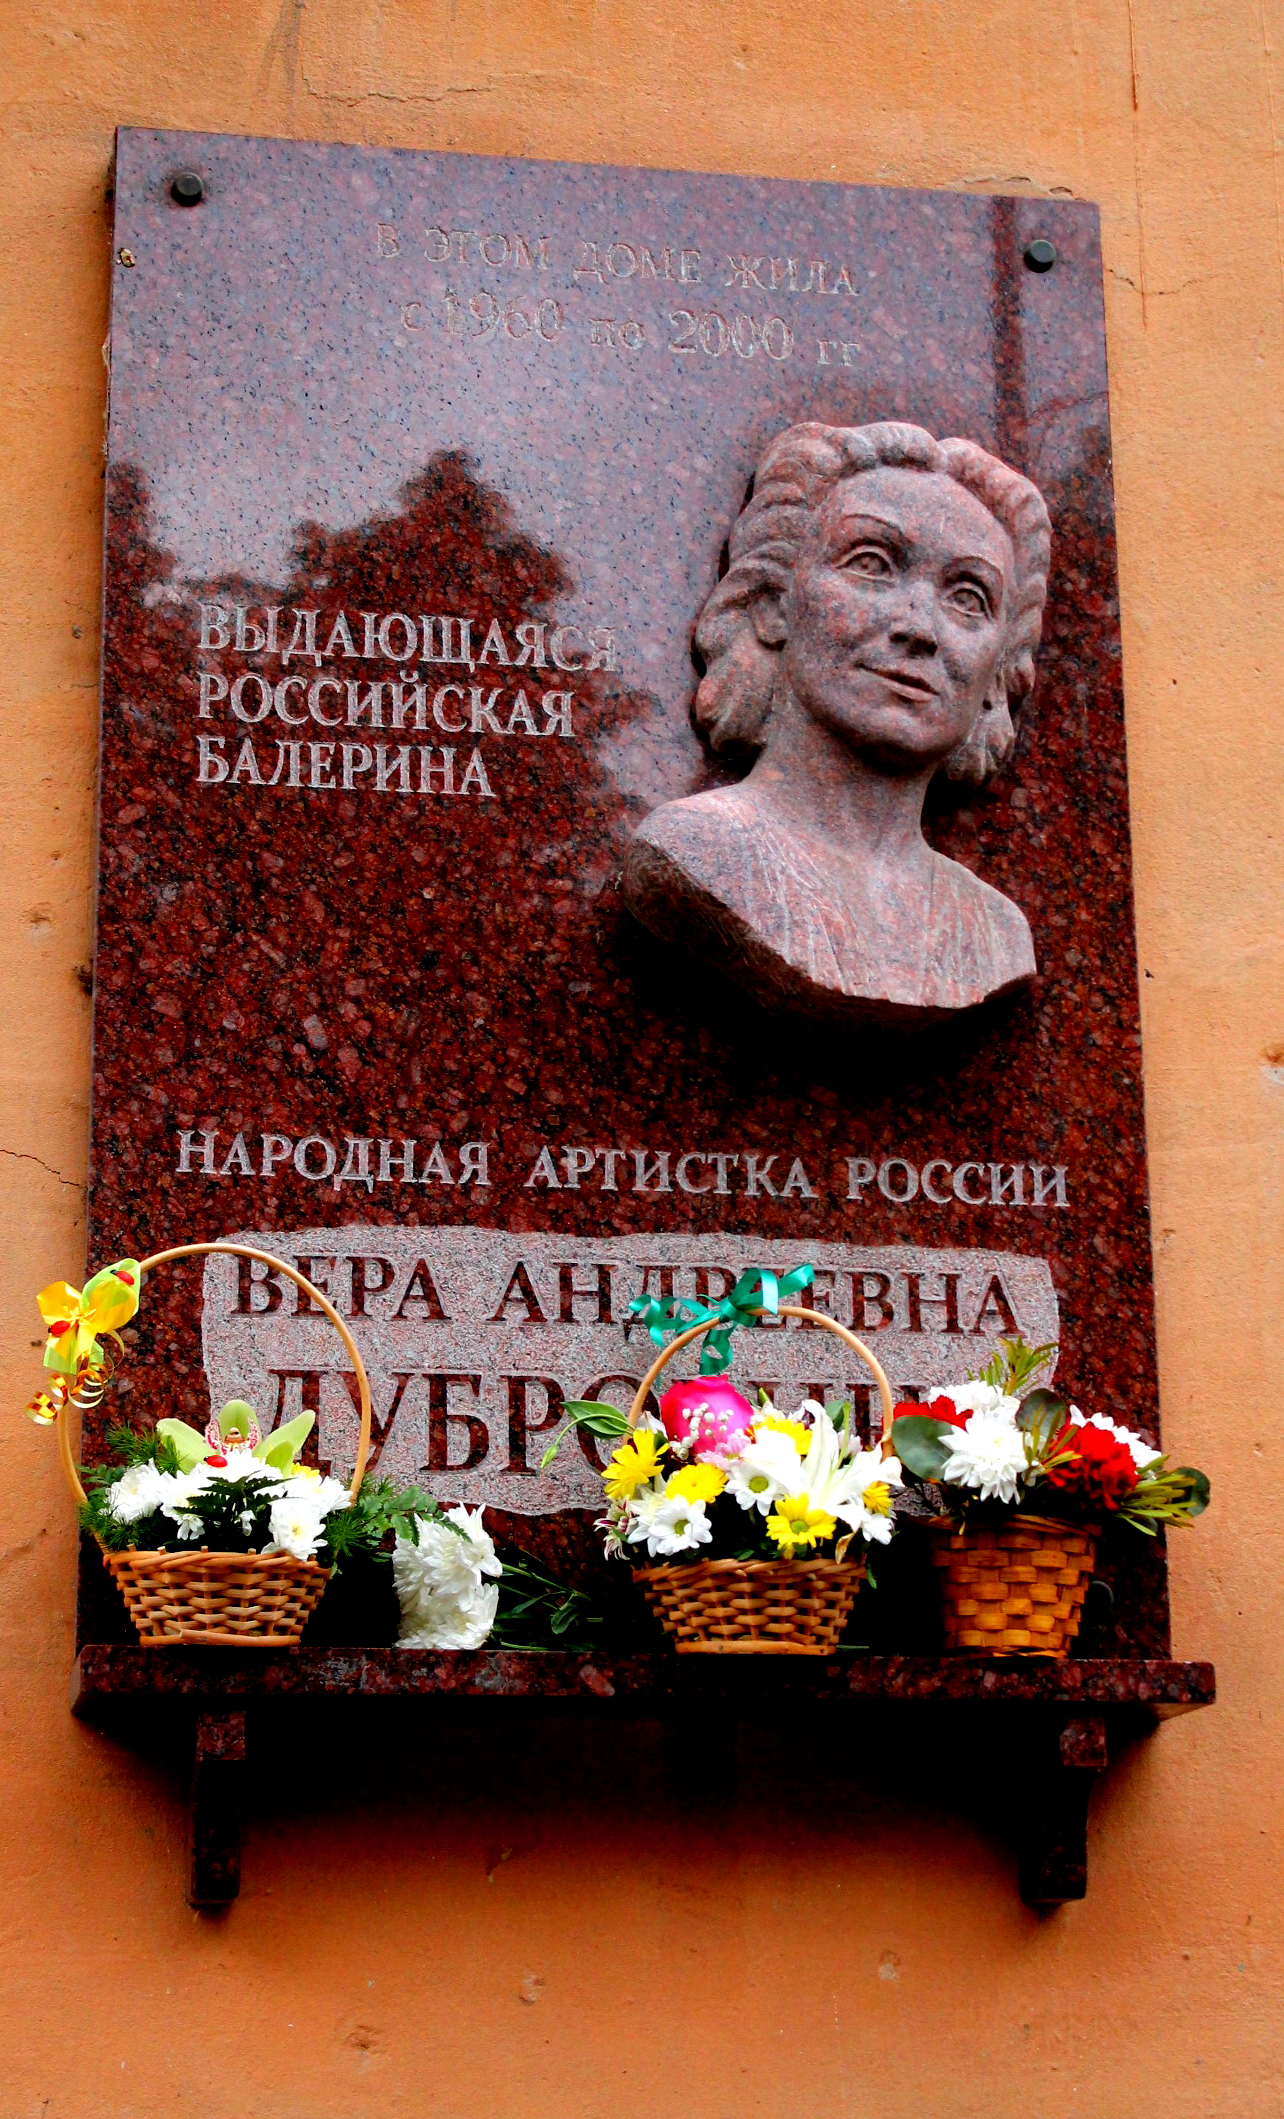 Мемориальная доска звезде балета Дубровиной В.А.